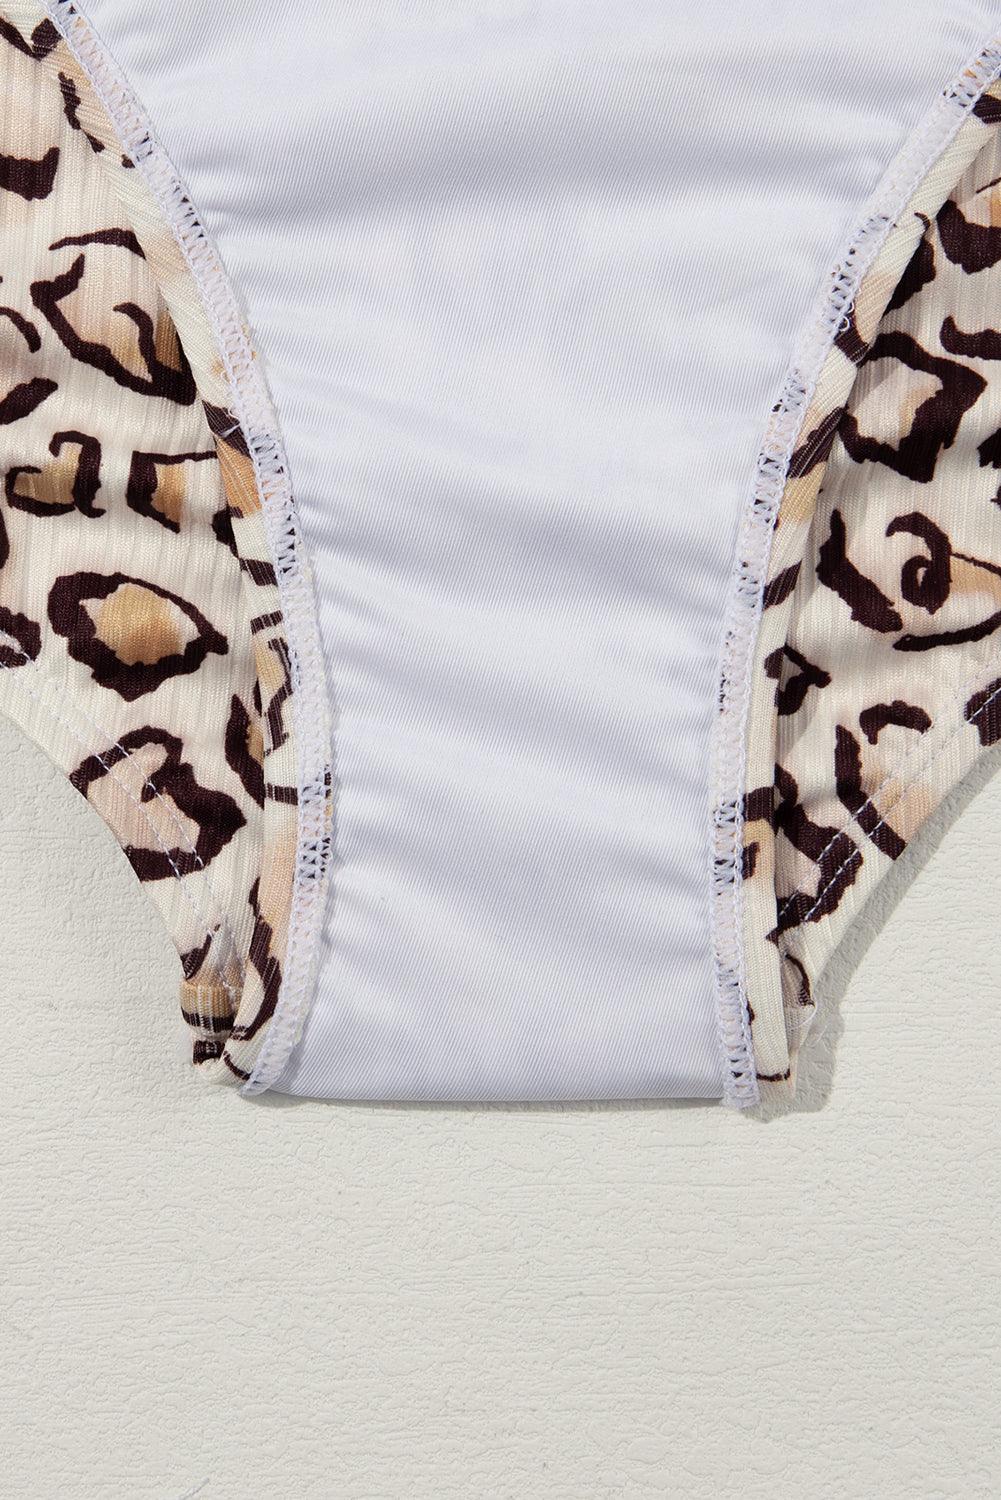 Khaki Leopard Print Notched Neck One Piece Swimsuit - L & M Kee, LLC